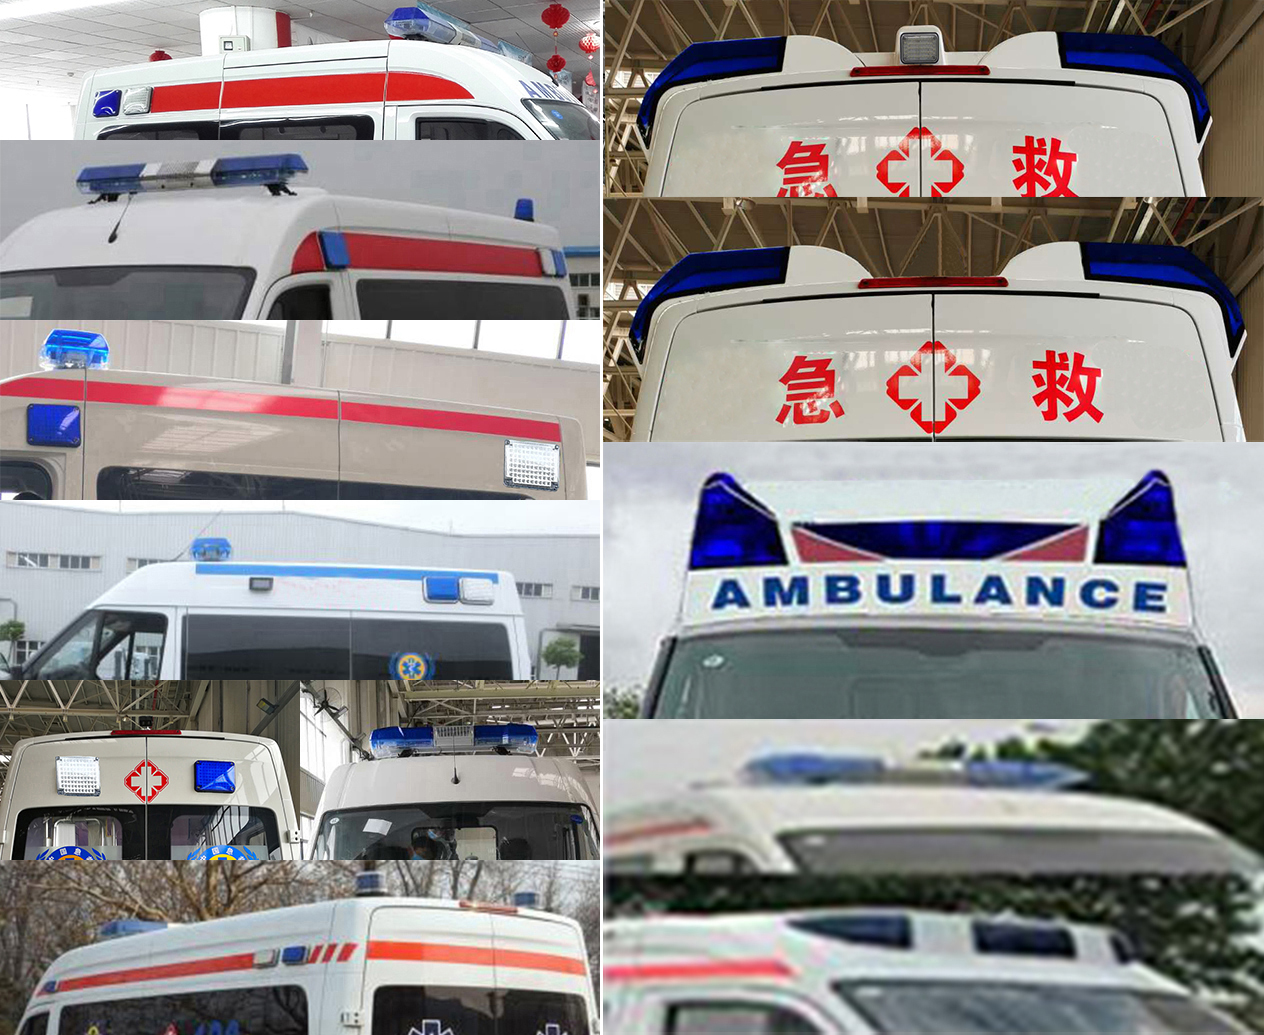 贵州牌GK5040XJHD01救护车公告图片